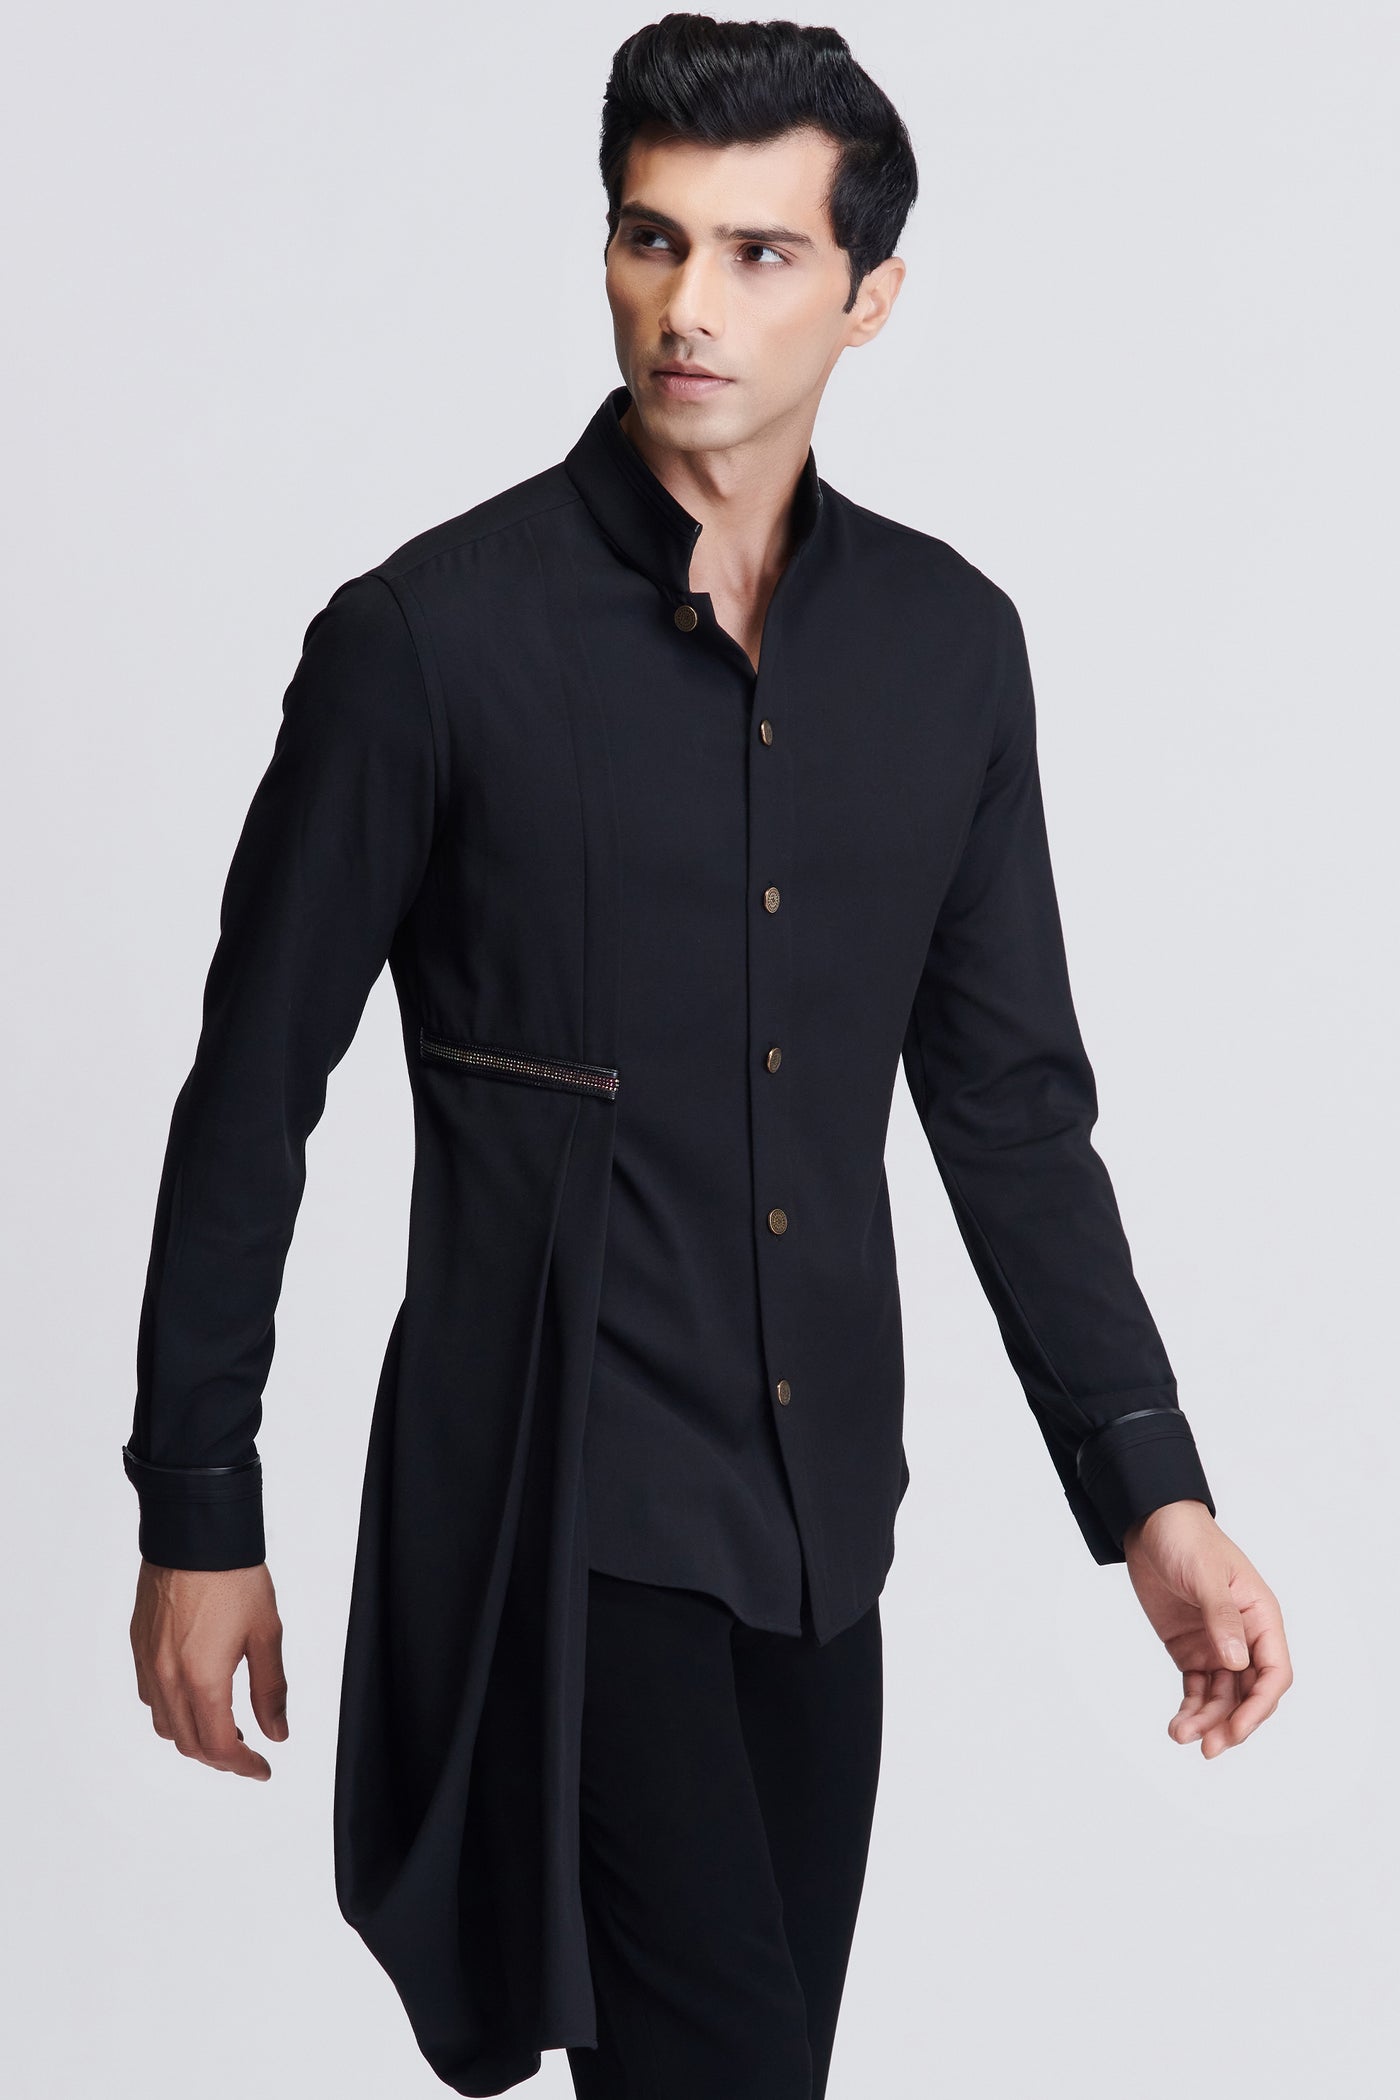 Shantanu & Nikhil Menswear Black Drape Shirt indian designer wear online shopping melange singapore